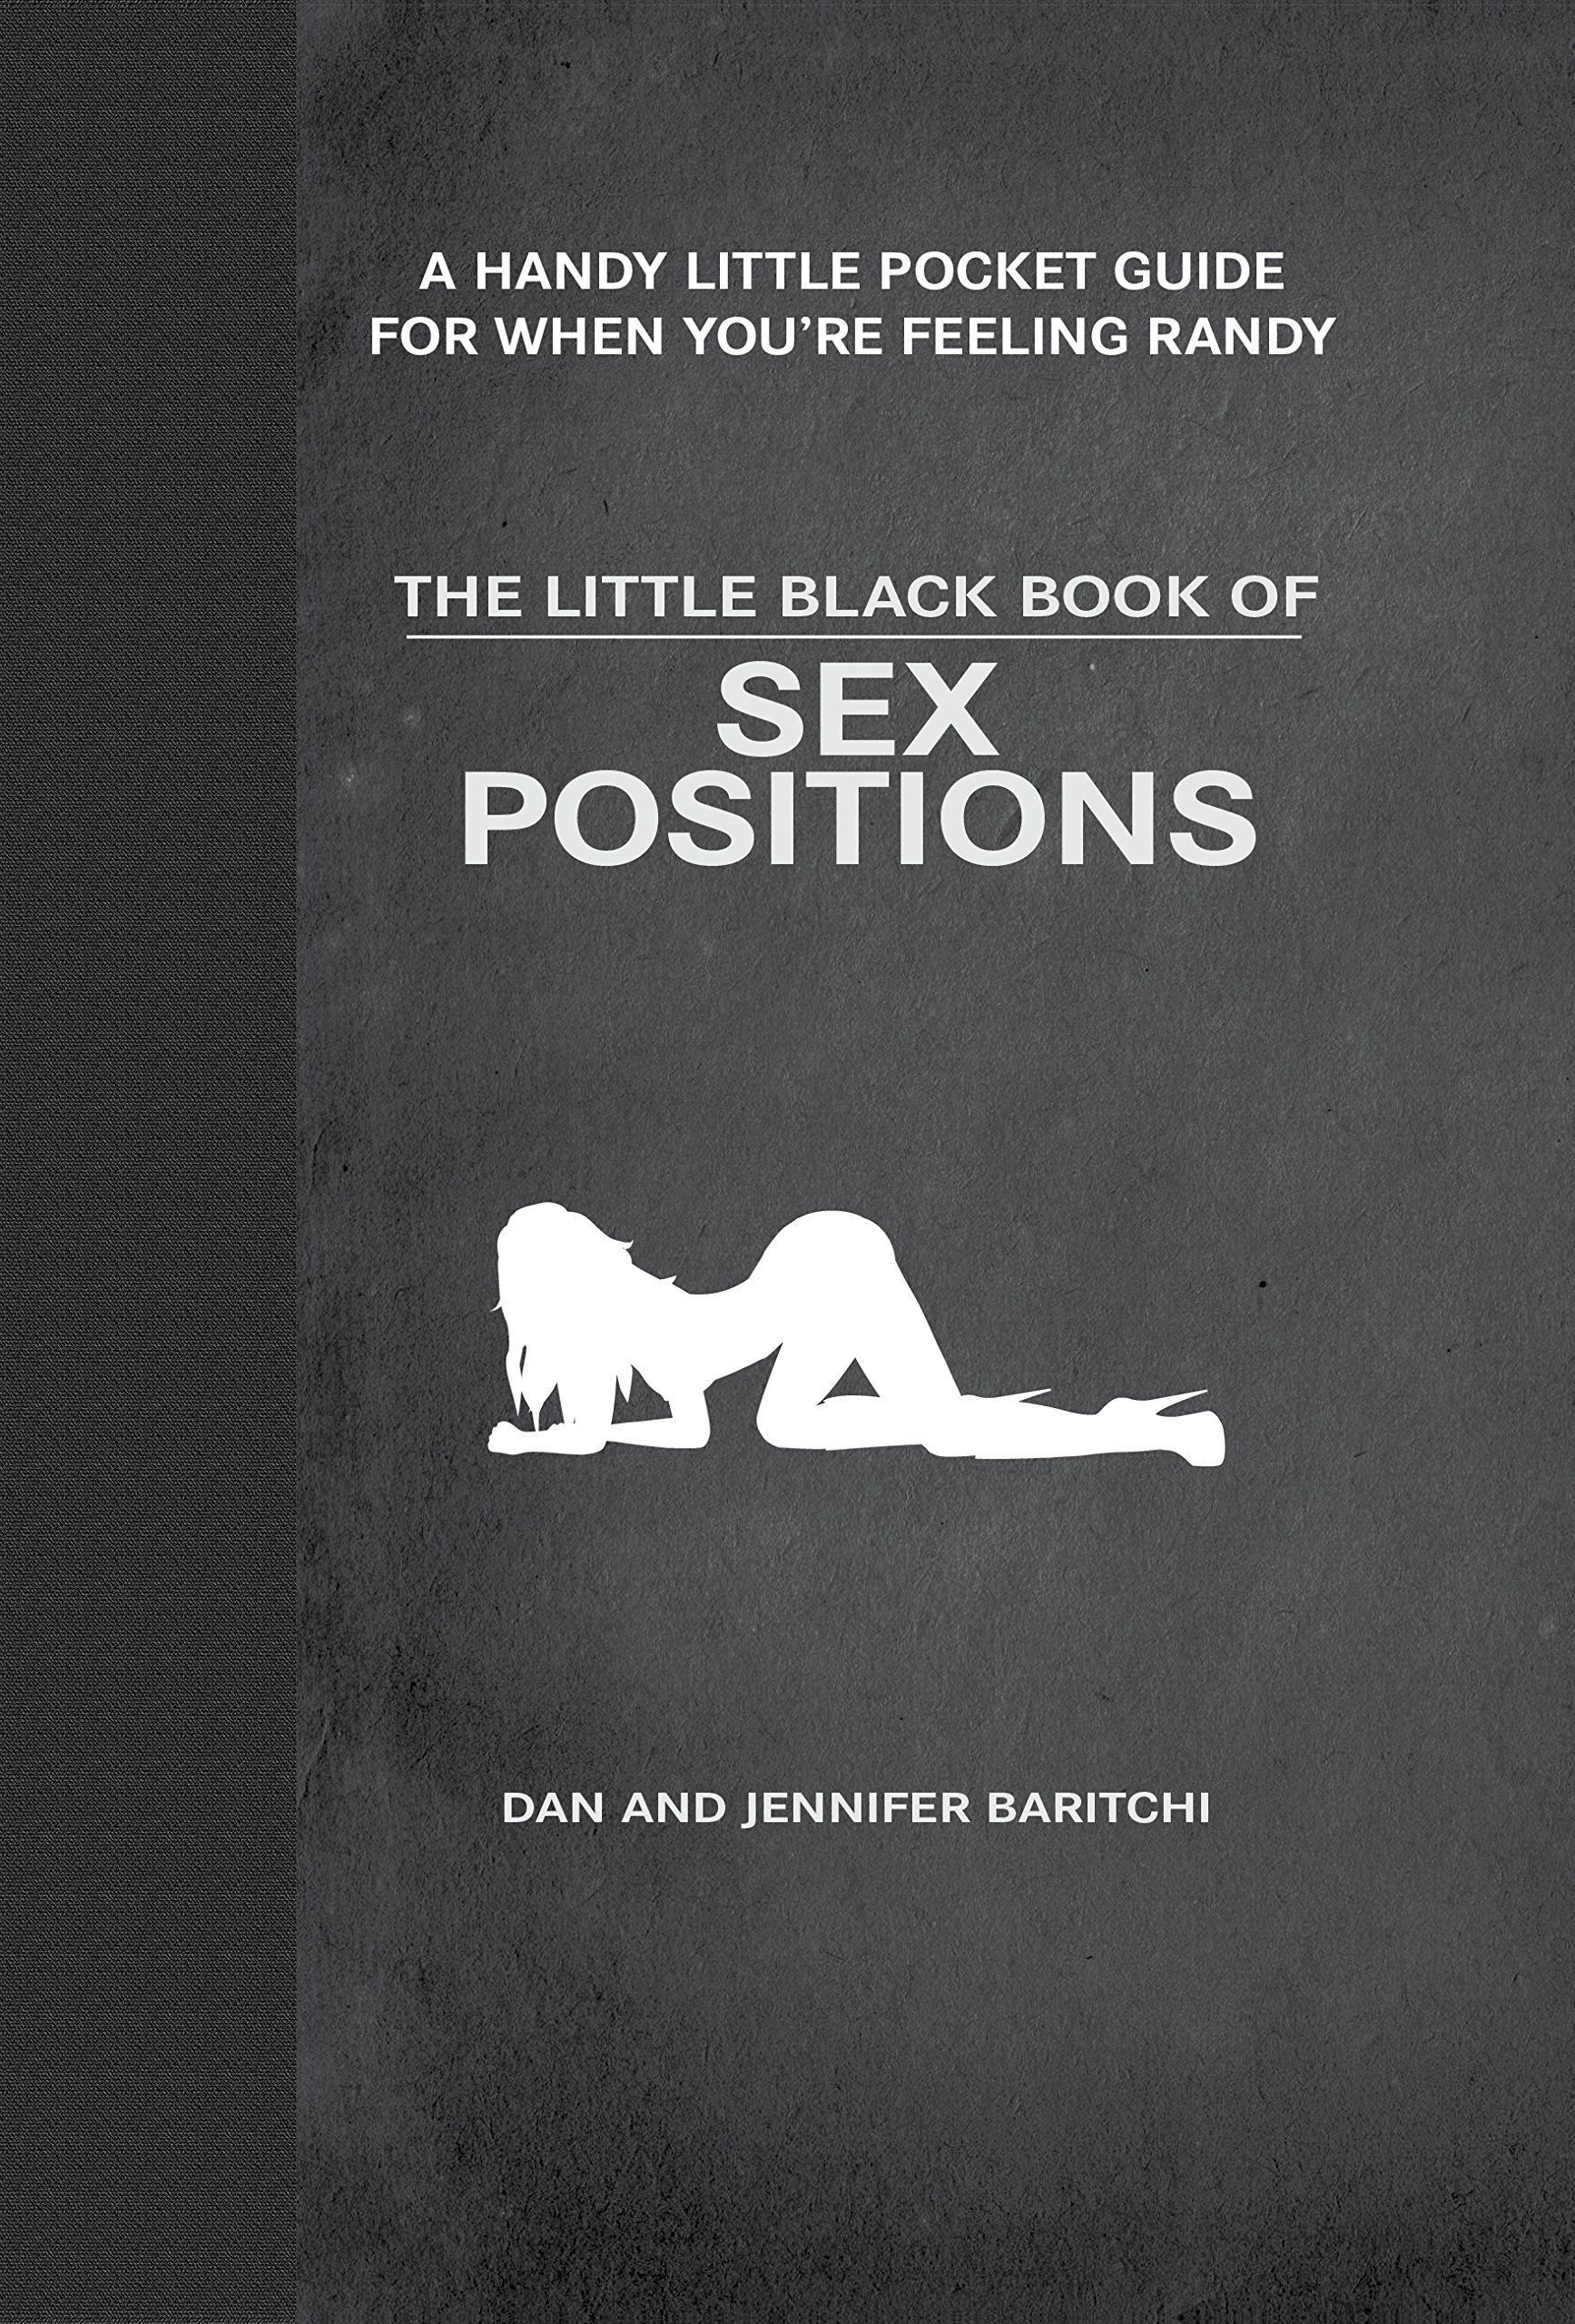 Sexual position to achieve maximum pleasure